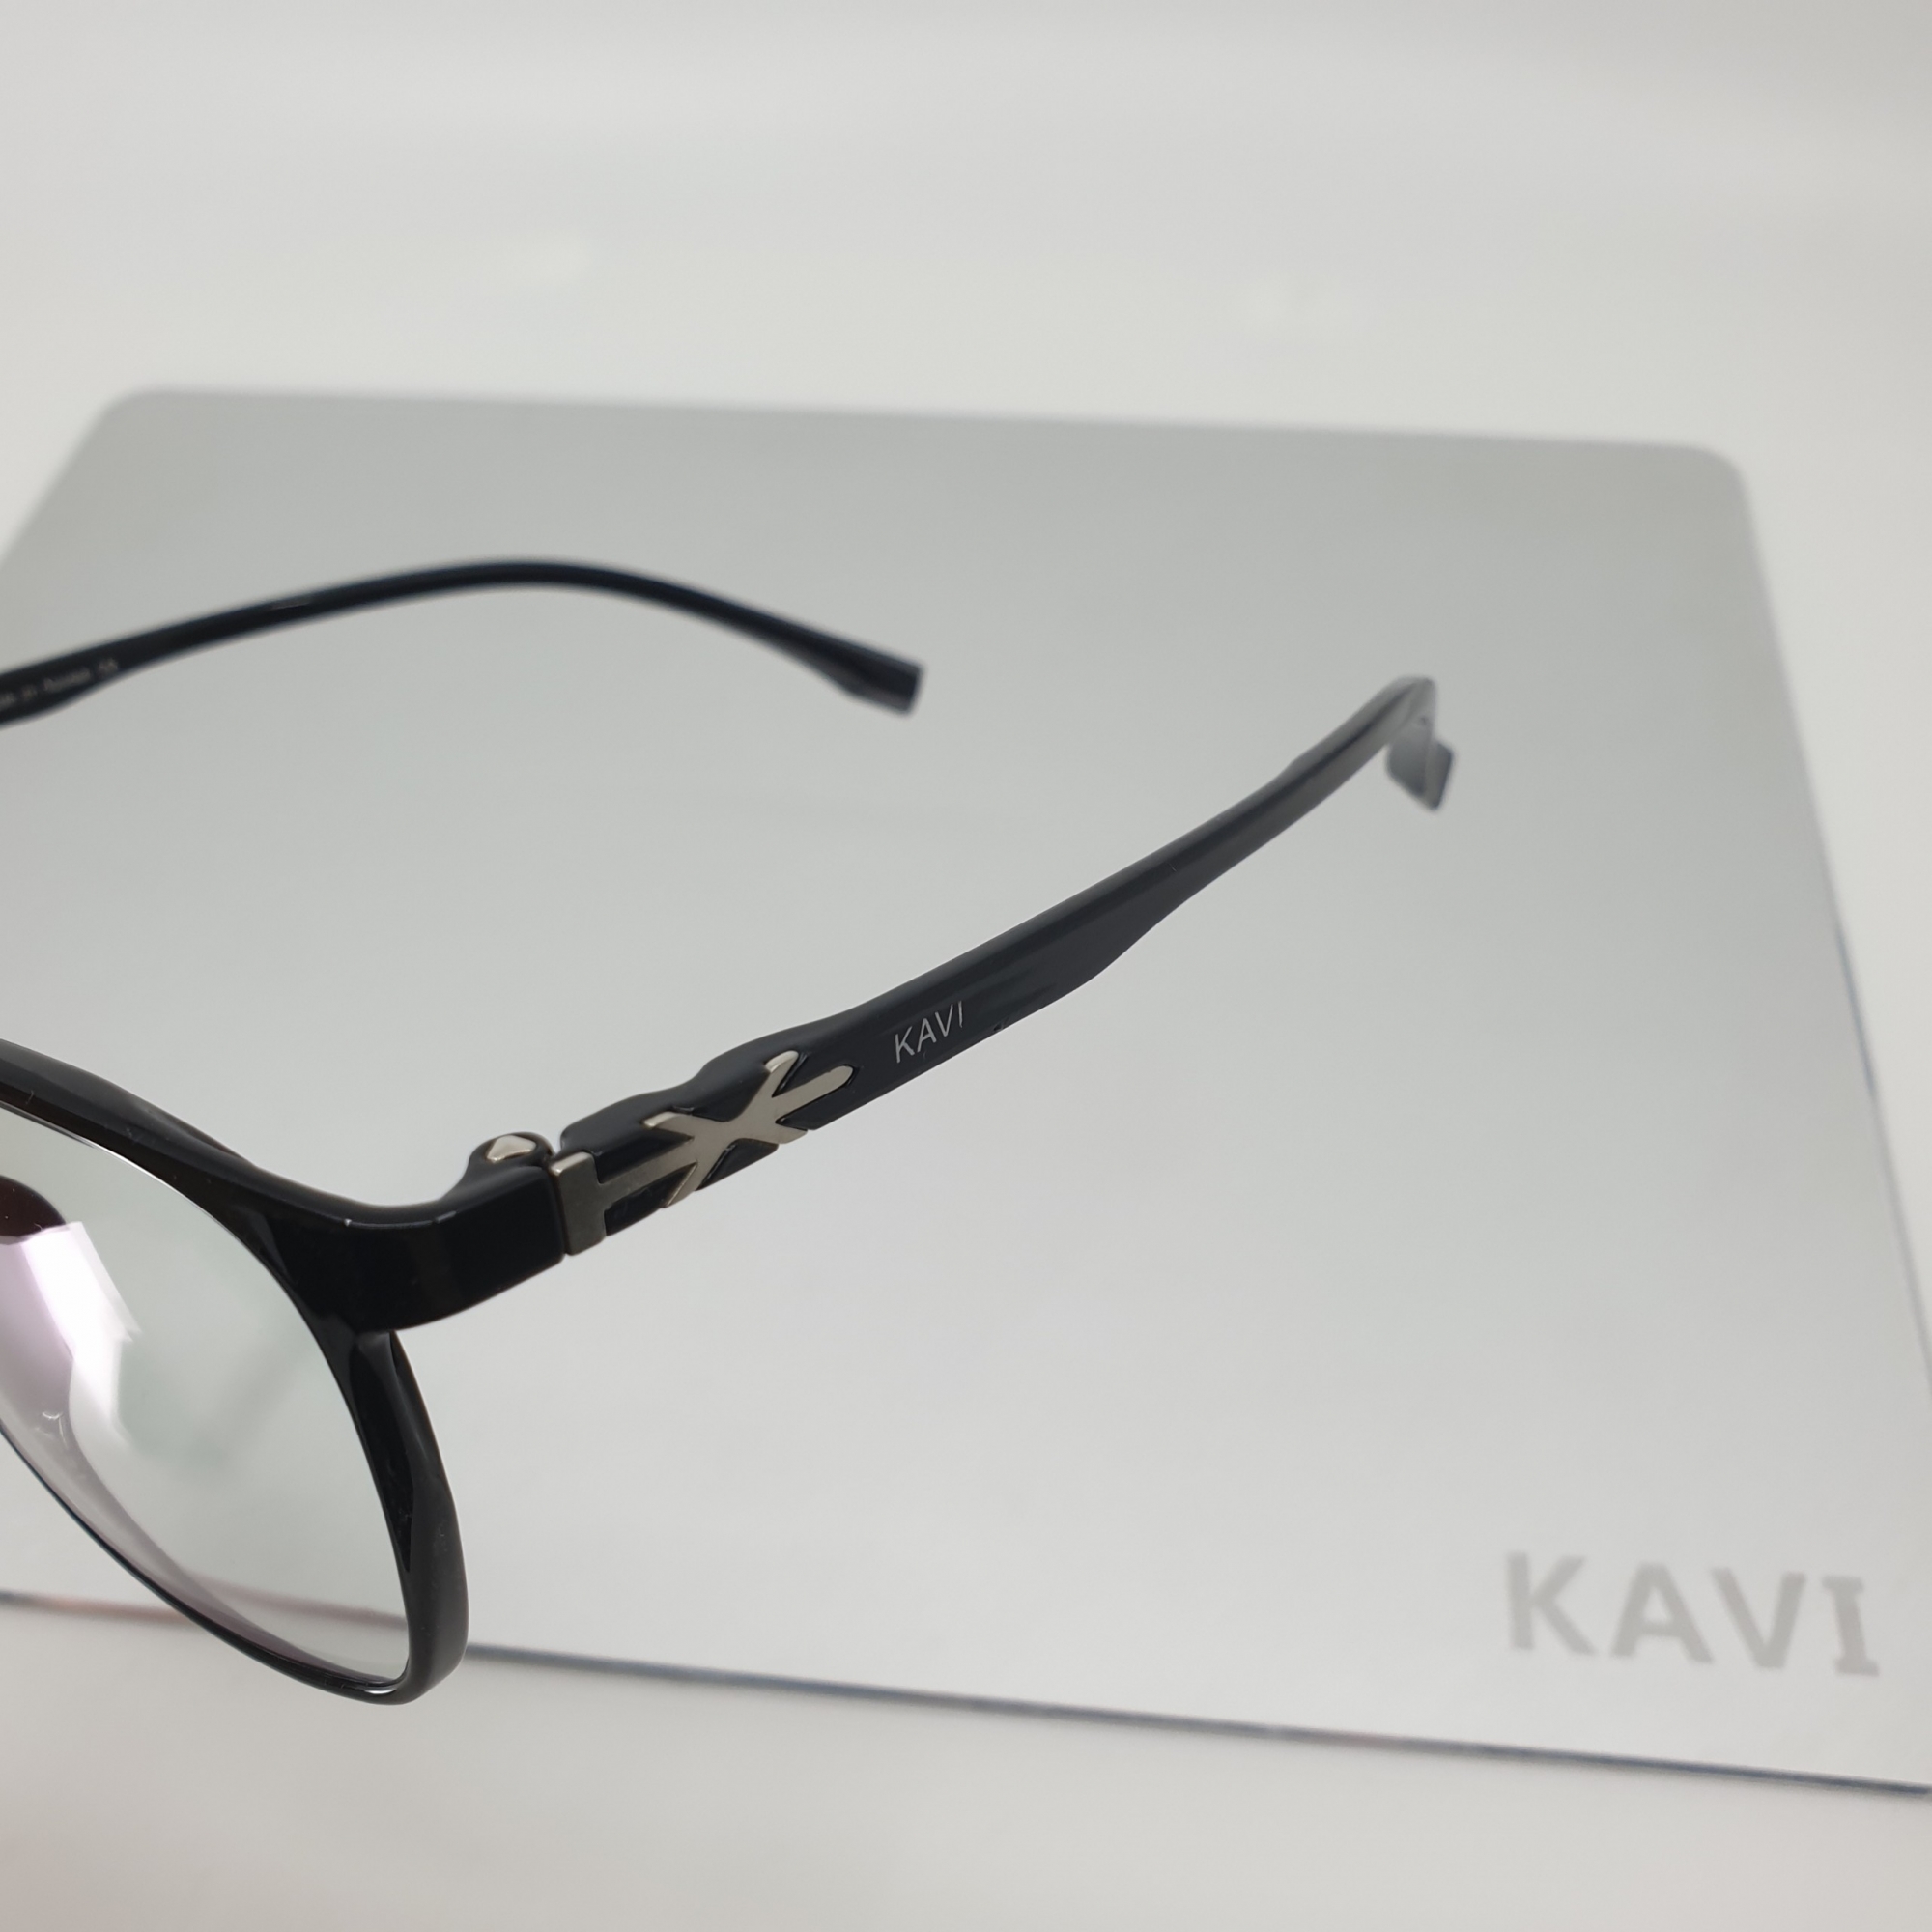 KC005 - Kính bảo vệ mắt khi dùng máy tính, điện thoại, chơi game Kavi